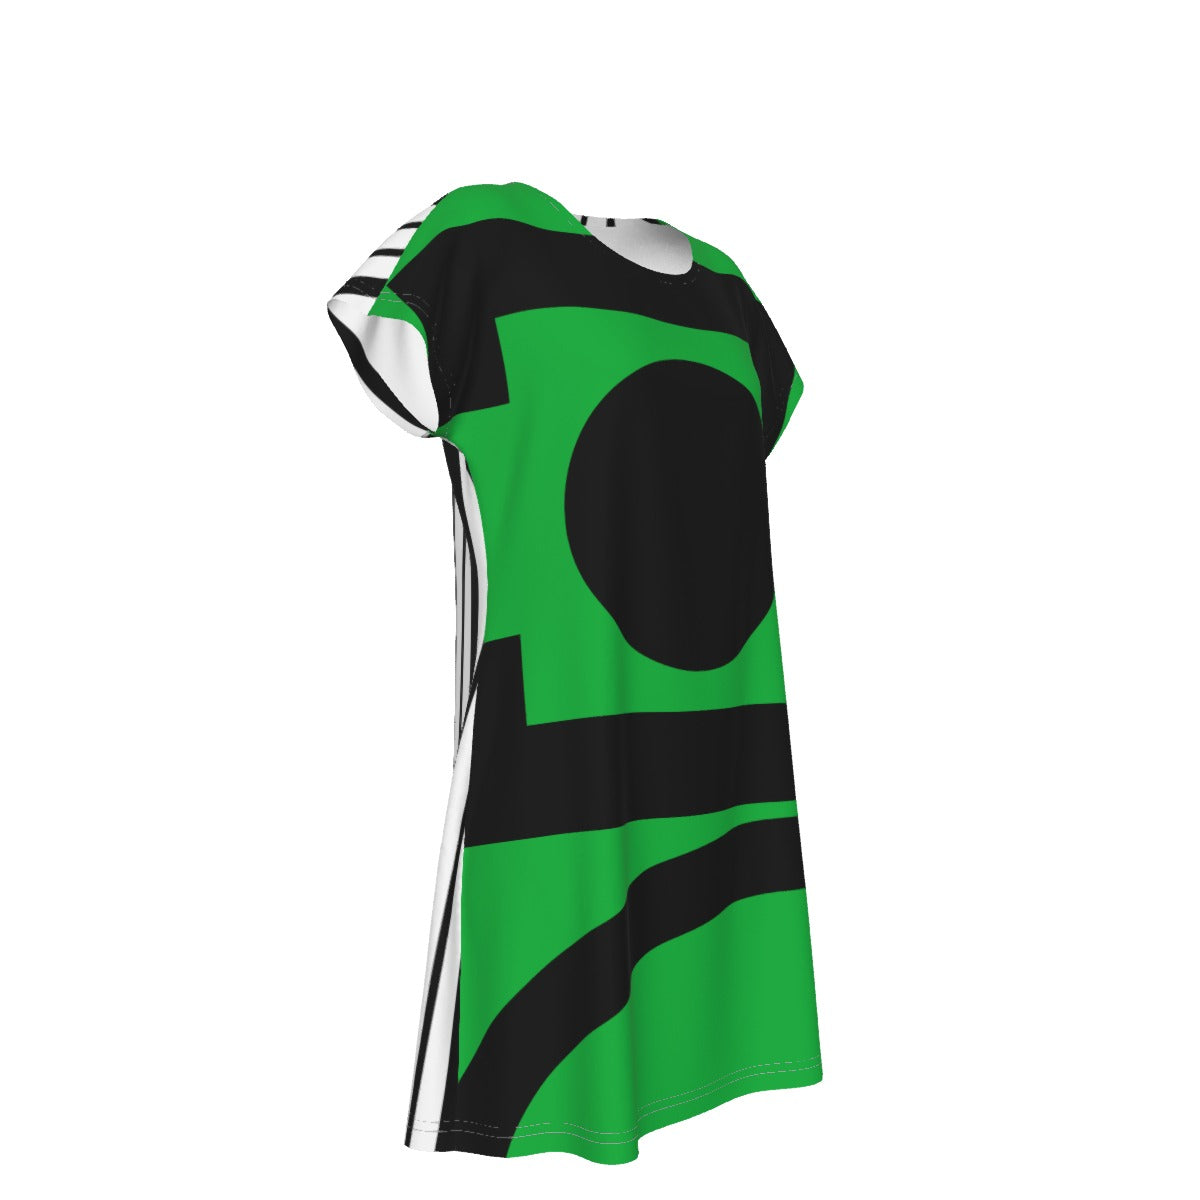 Origen Destination |Signature Women's Short Sleeve Green Dress